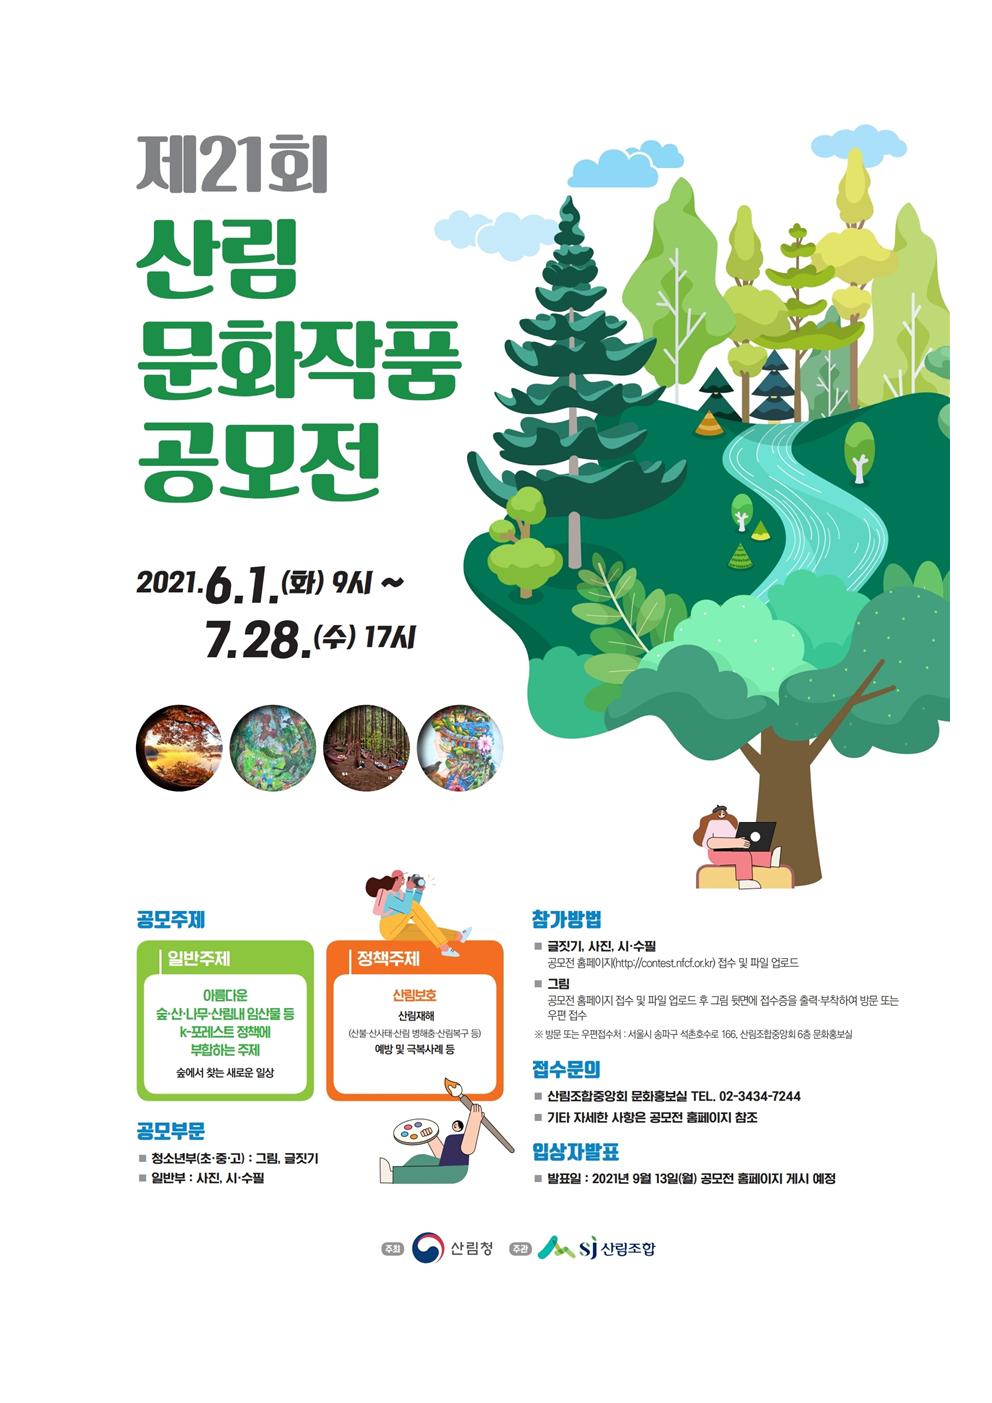 가정통신문-제21회 산림문화작품 공모전 참여 안내002